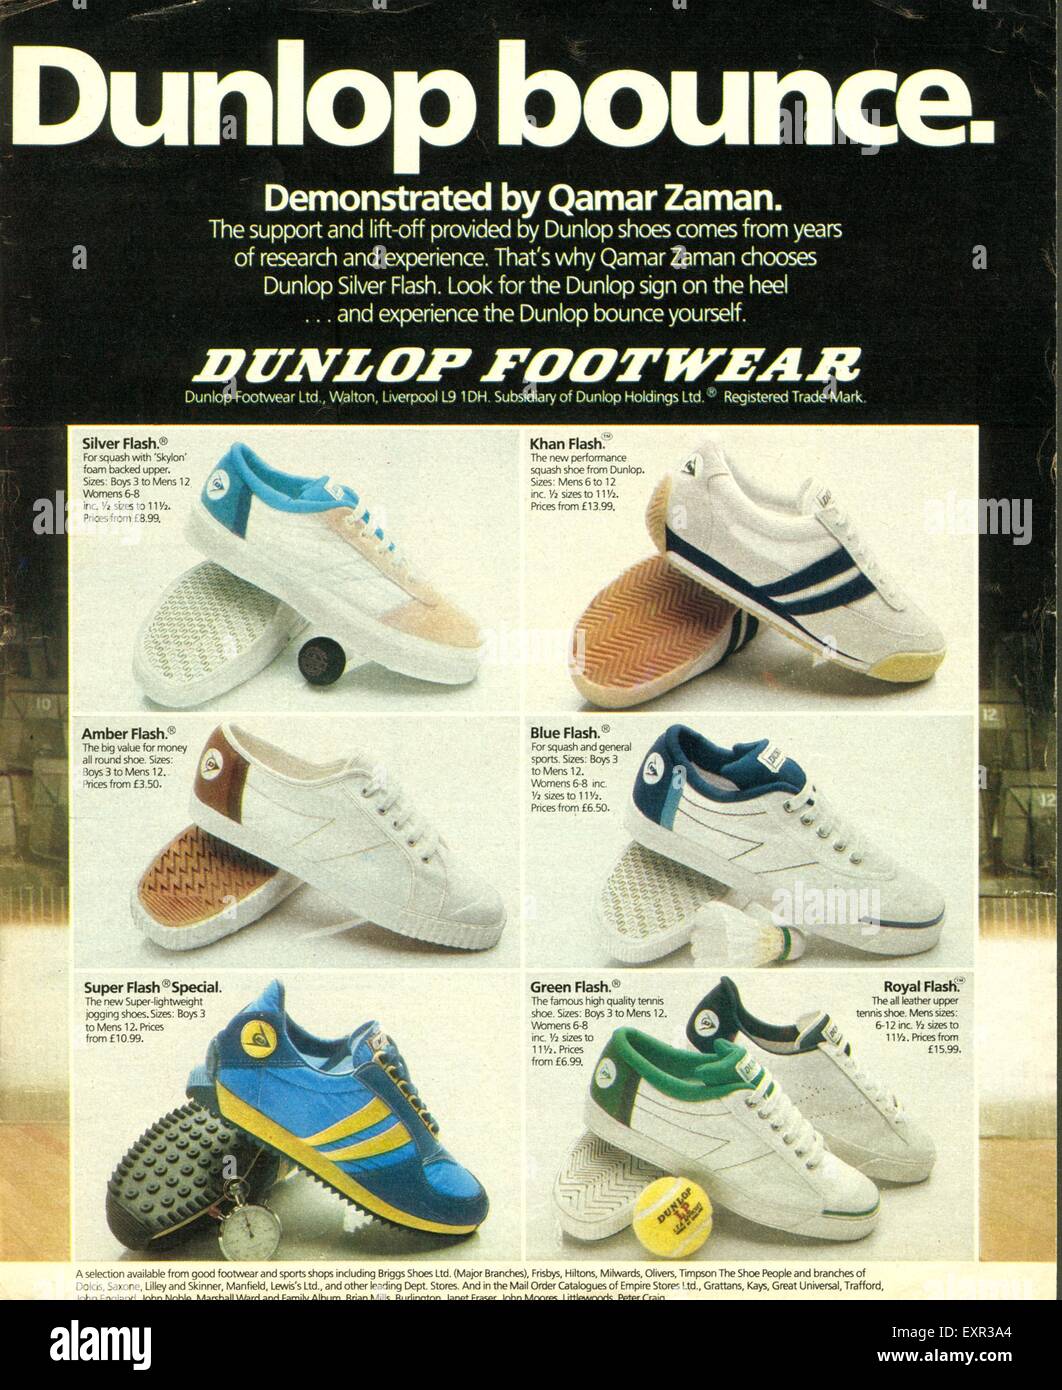 1970s tennis shoes